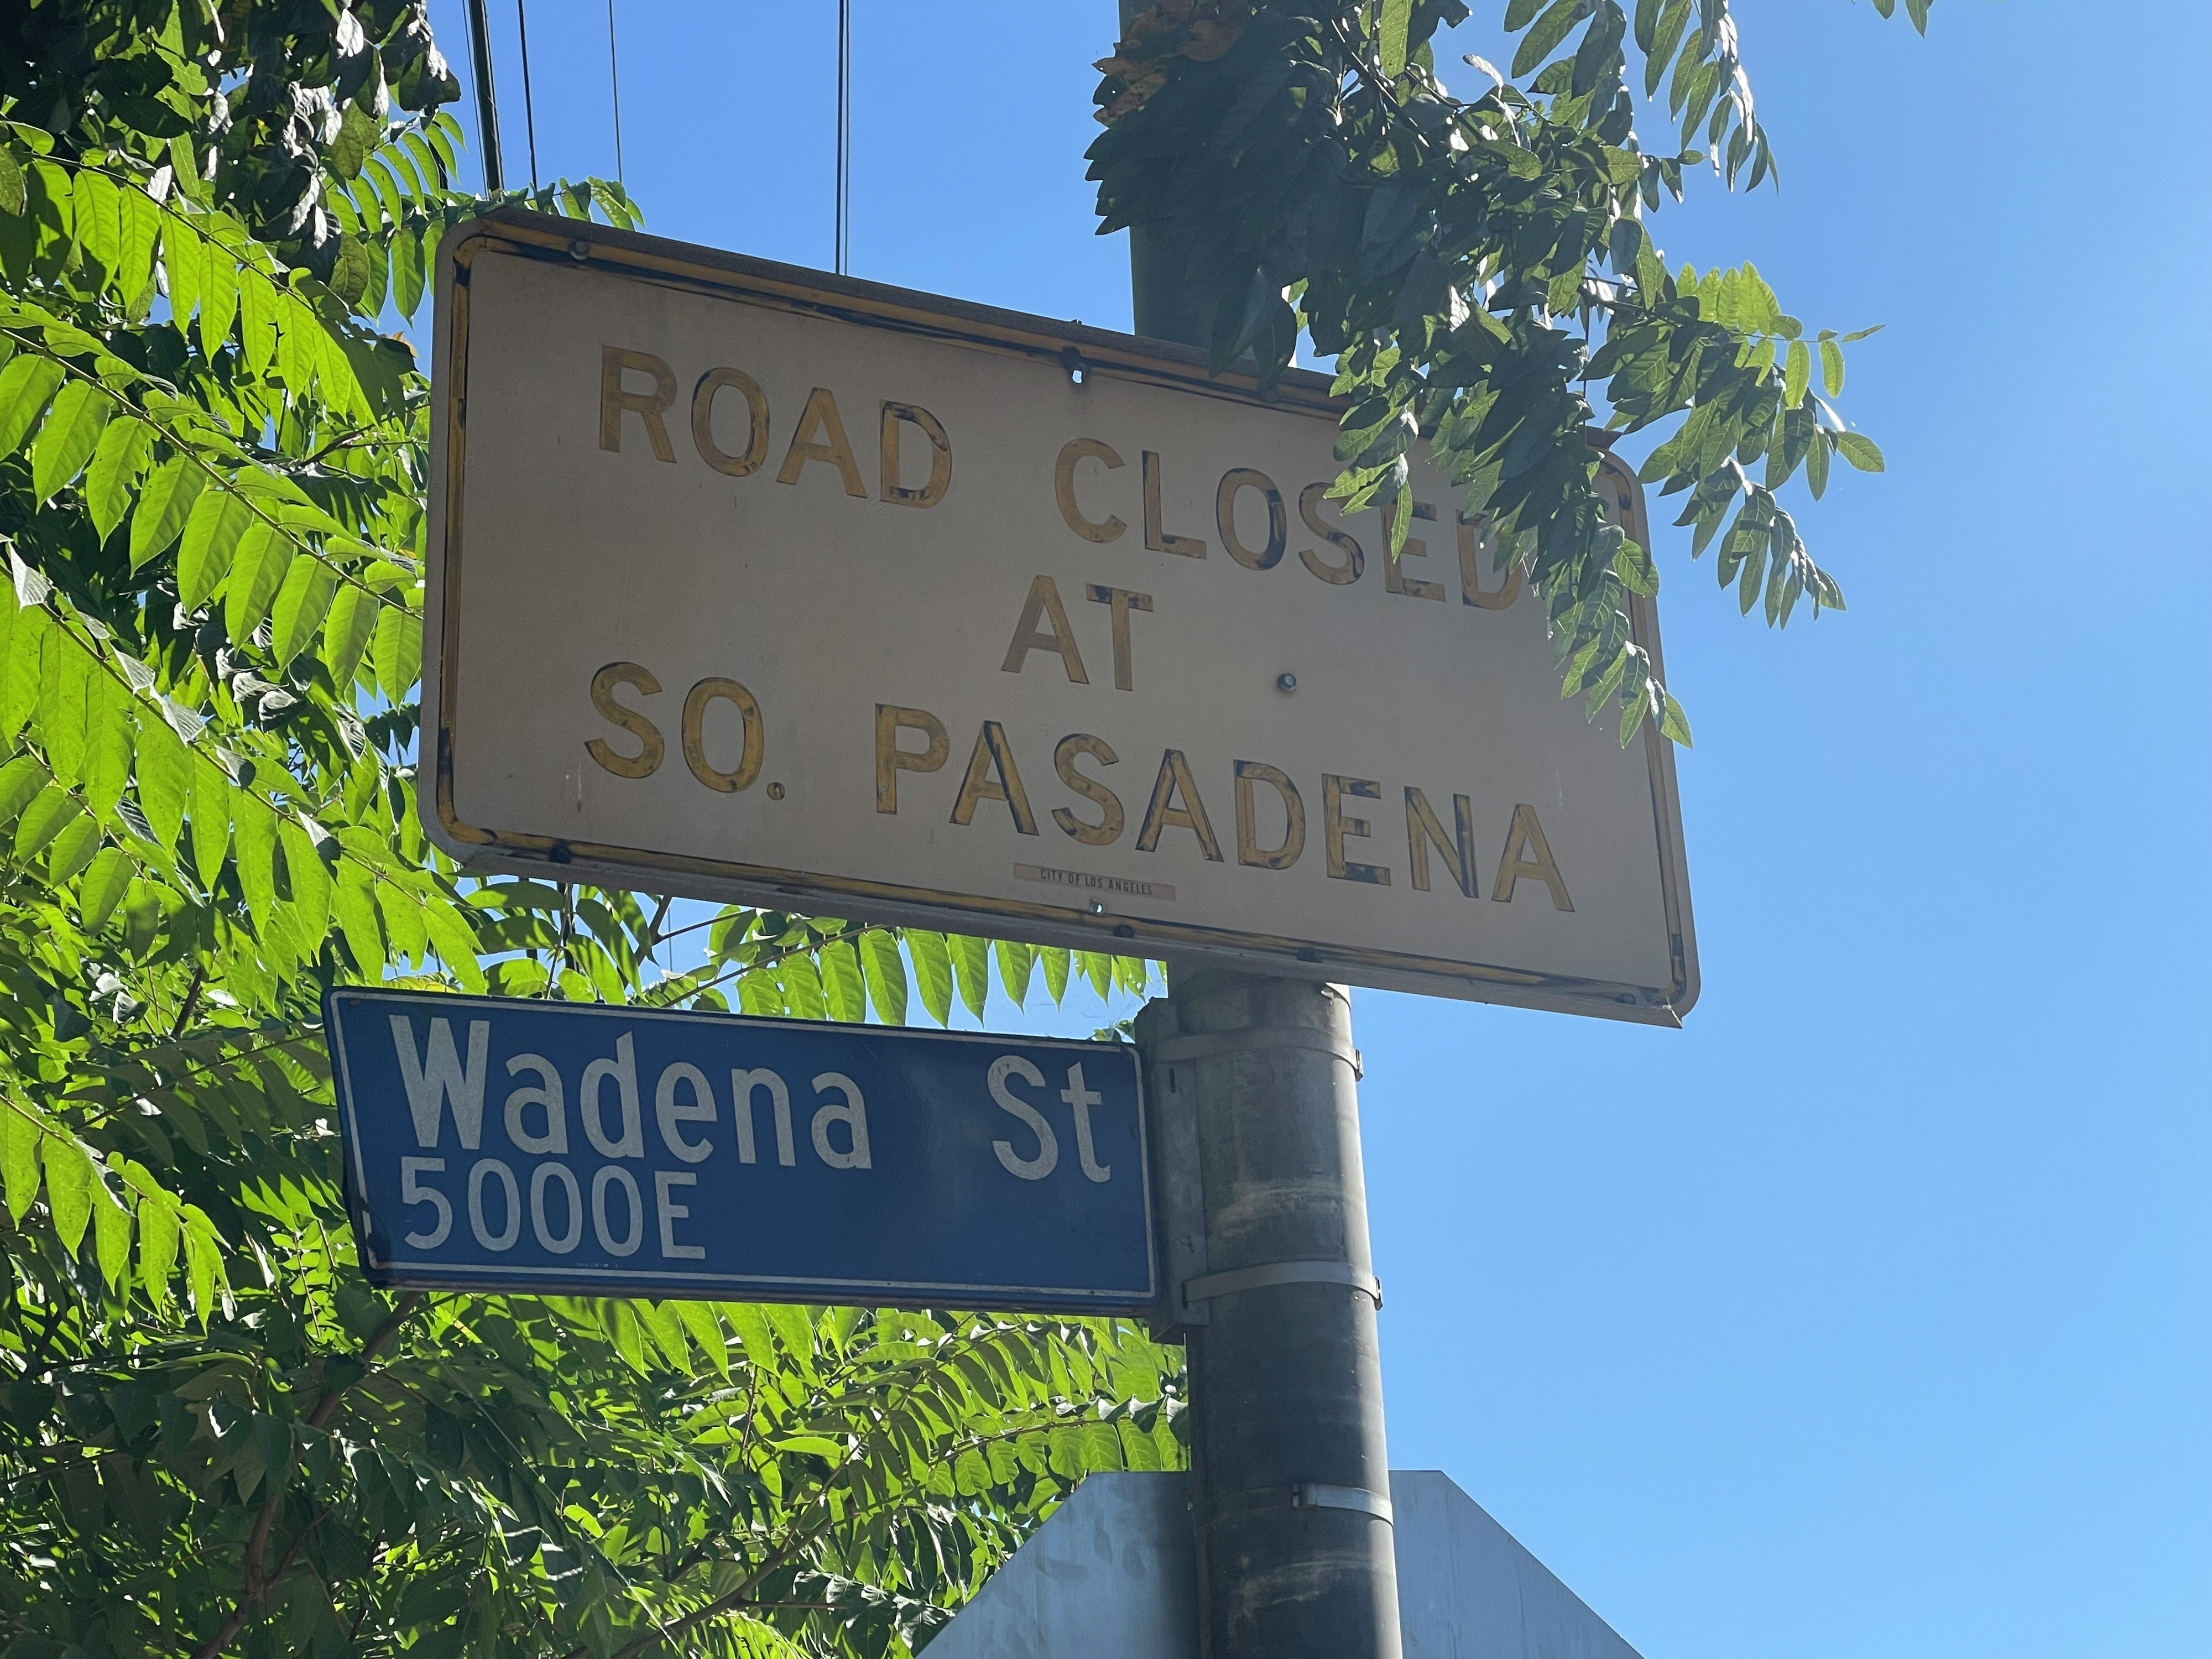 Historic road sign dividing El Sereno and South Pasadena removed